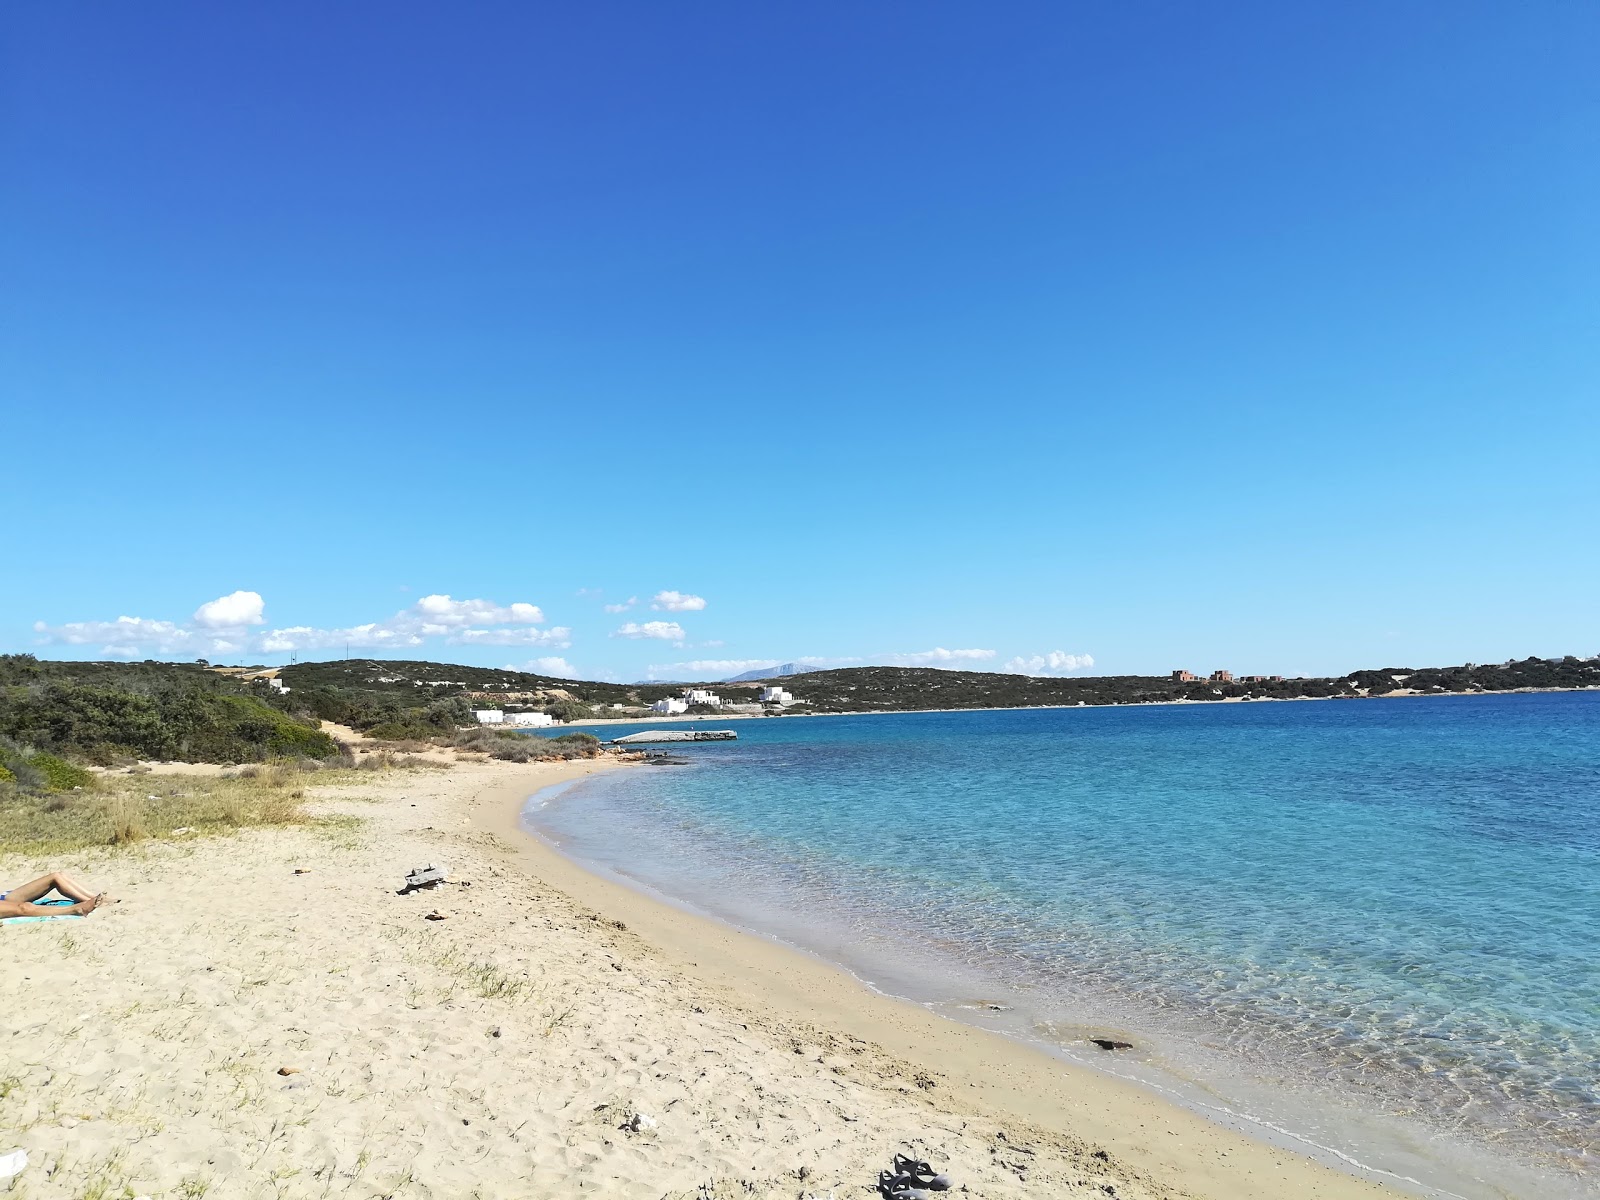 Dionisos beach'in fotoğrafı parlak ince kum yüzey ile